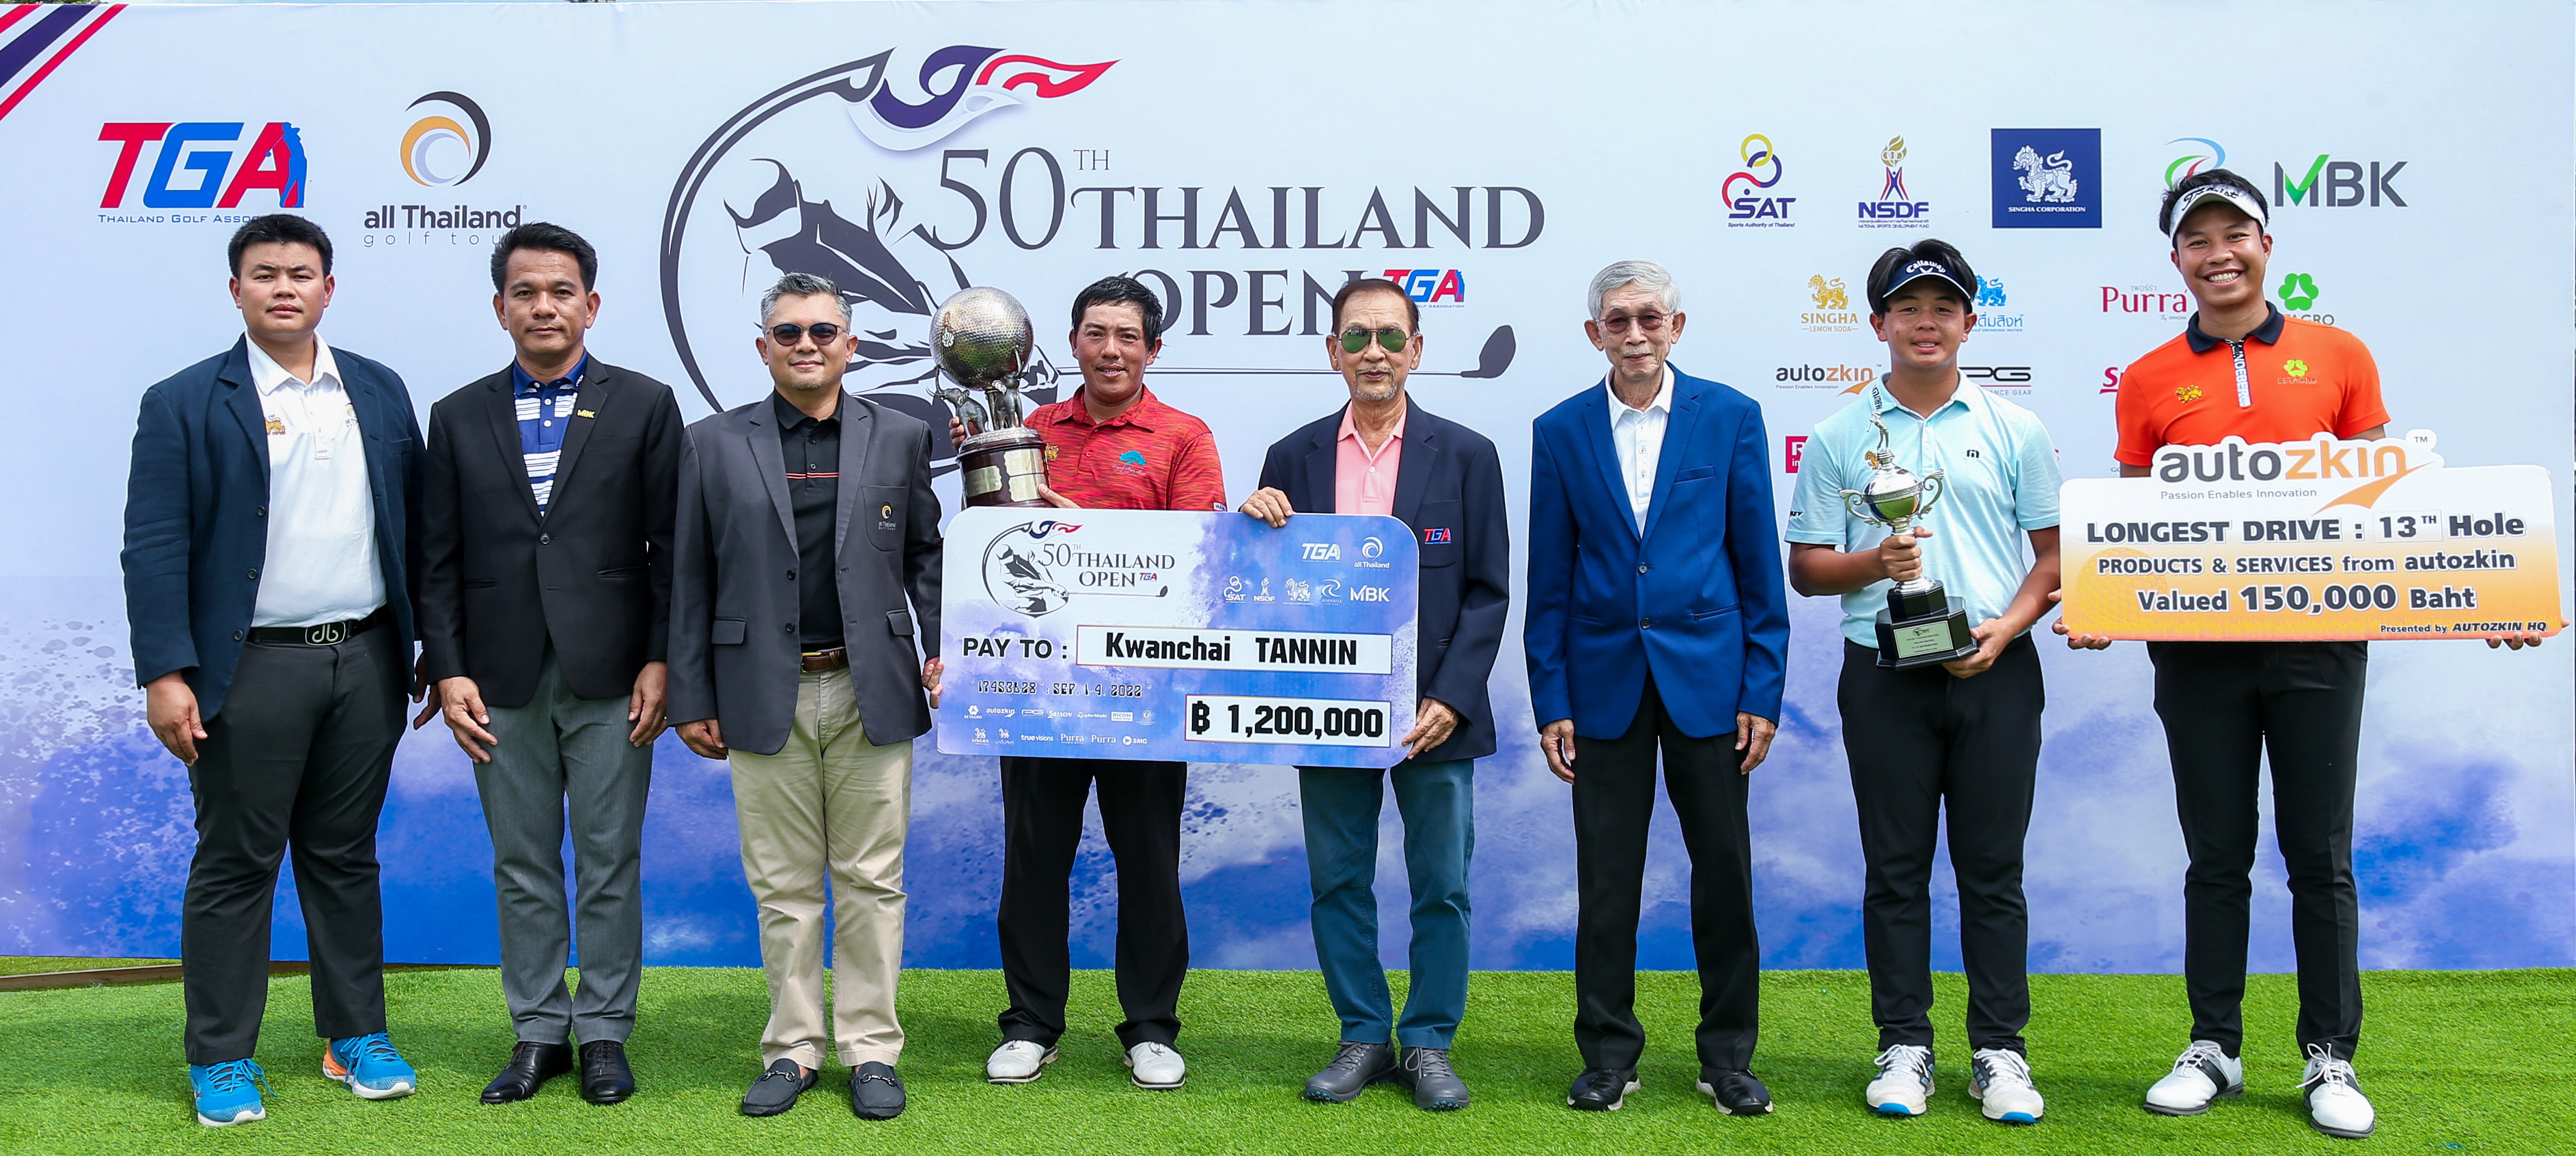 all thailand golf tour q school 2023